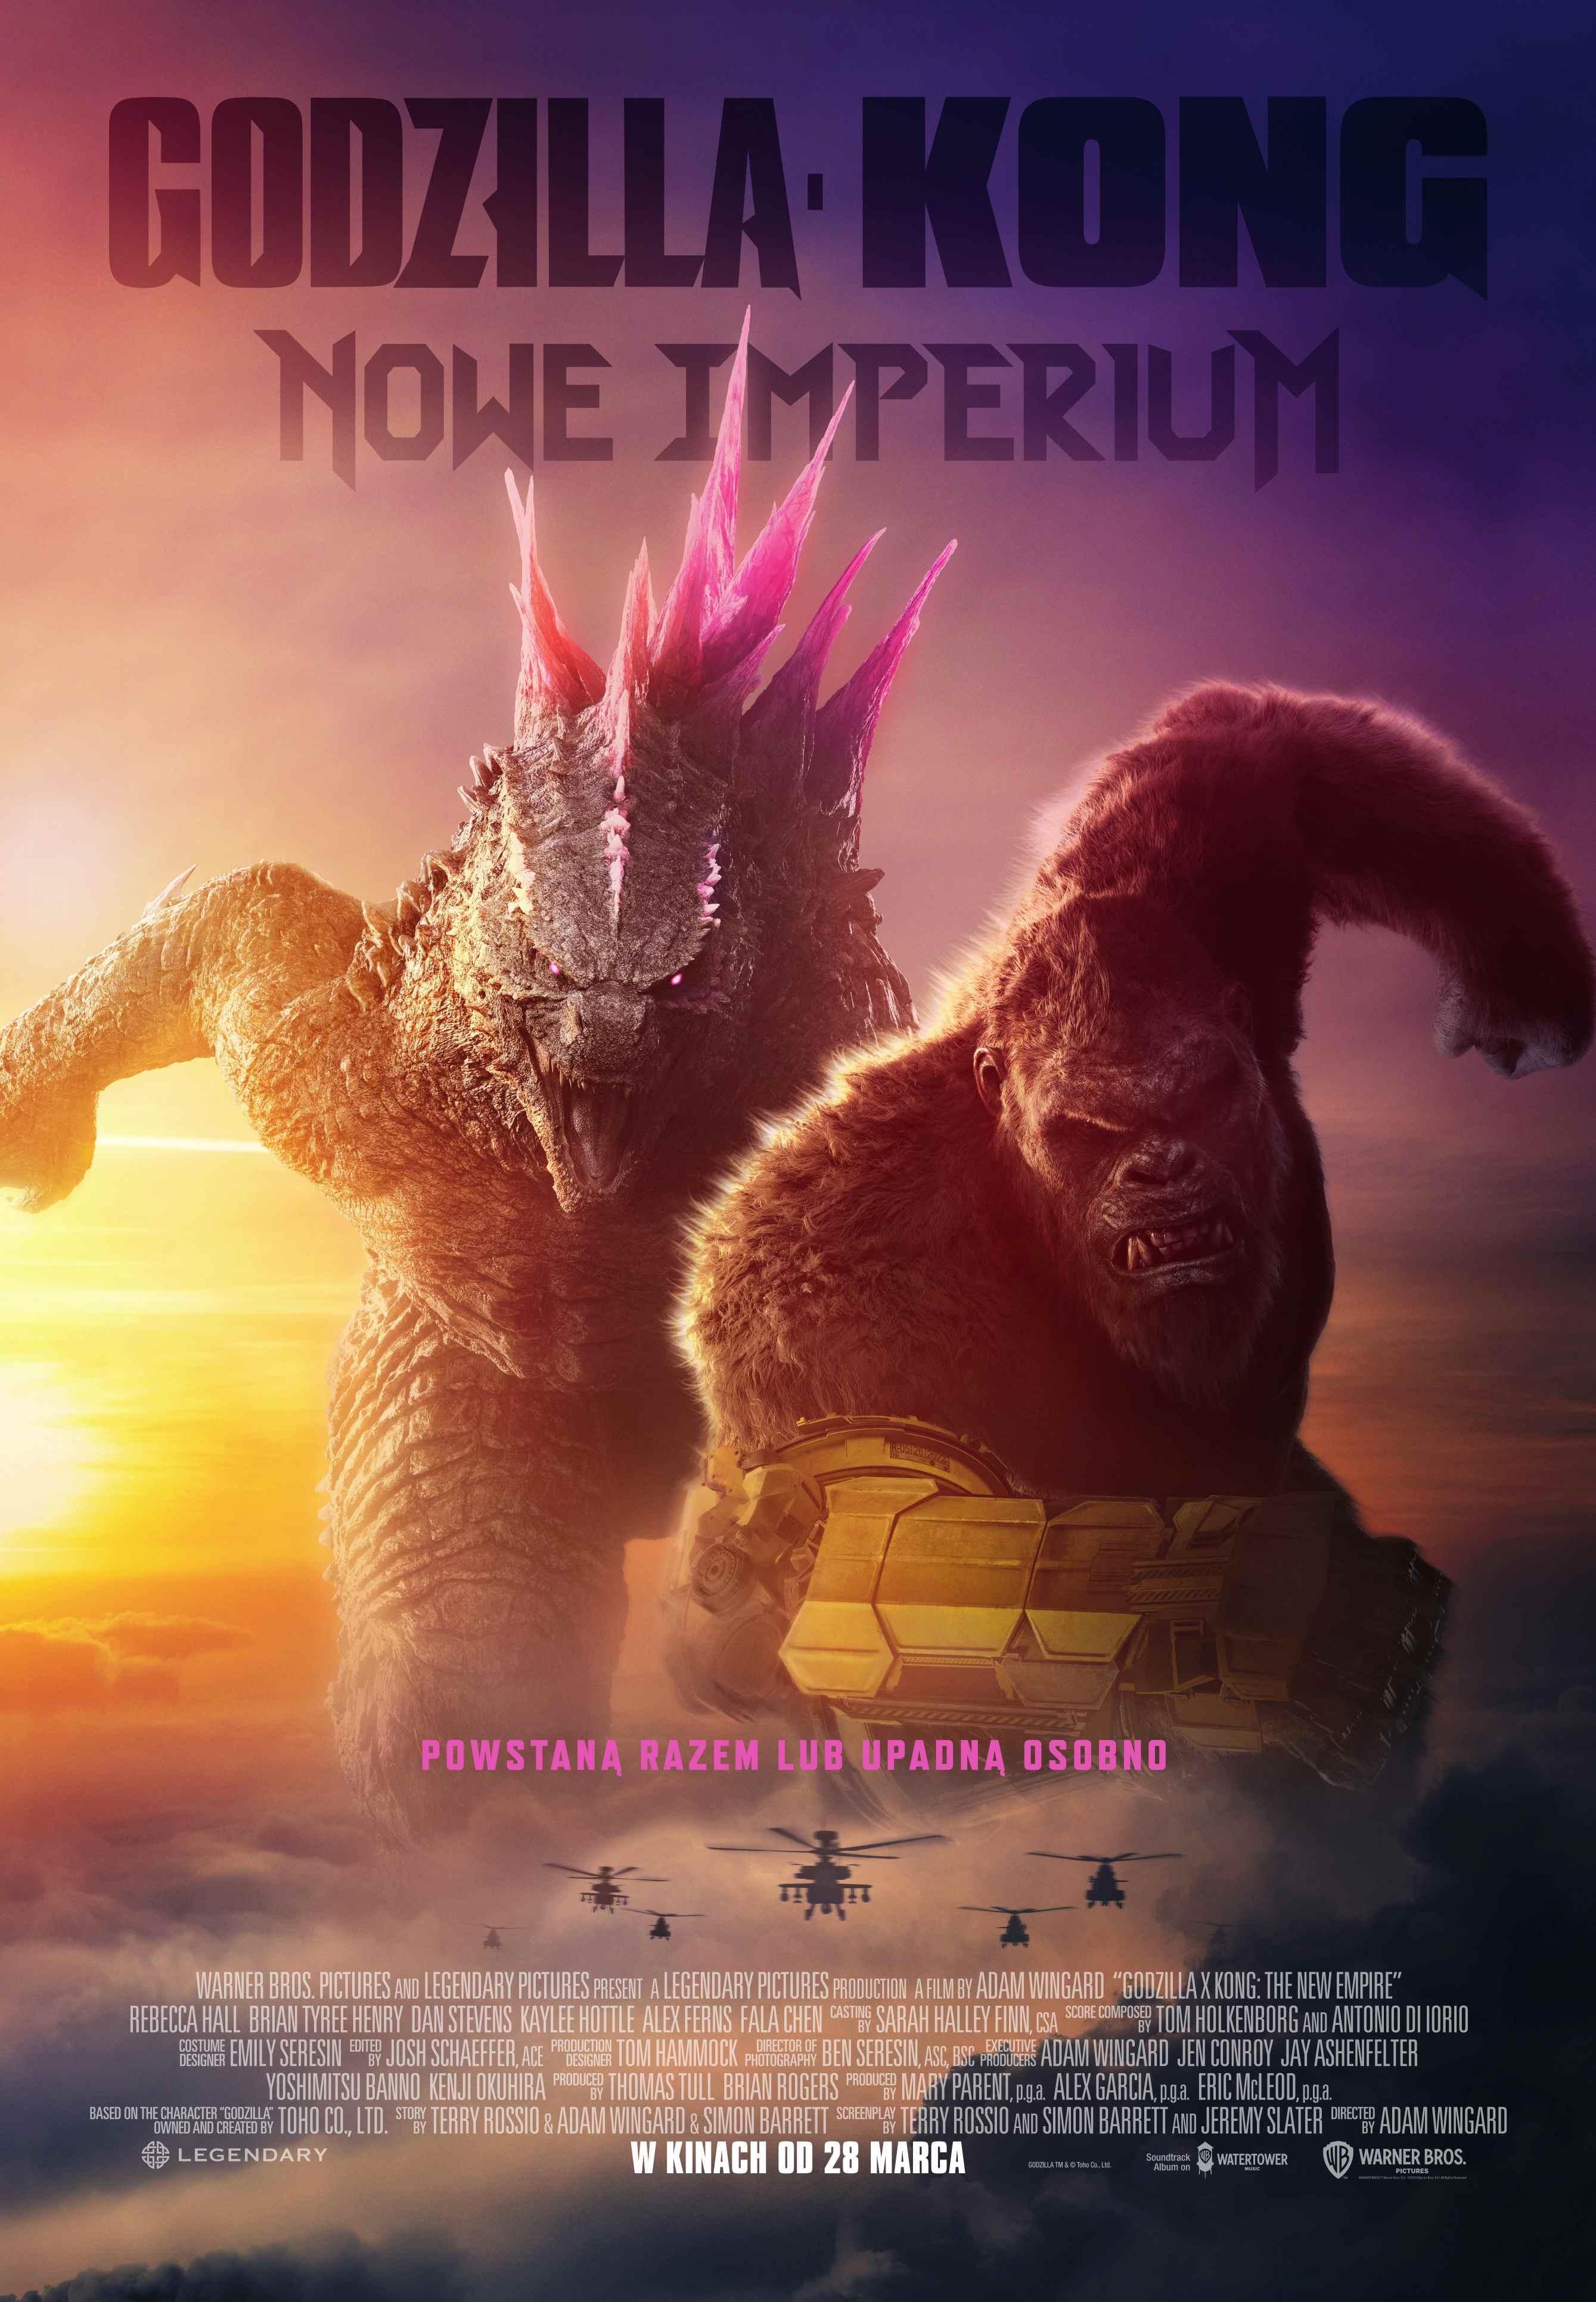 Godzilla i Kong: Nowe imperium 3D